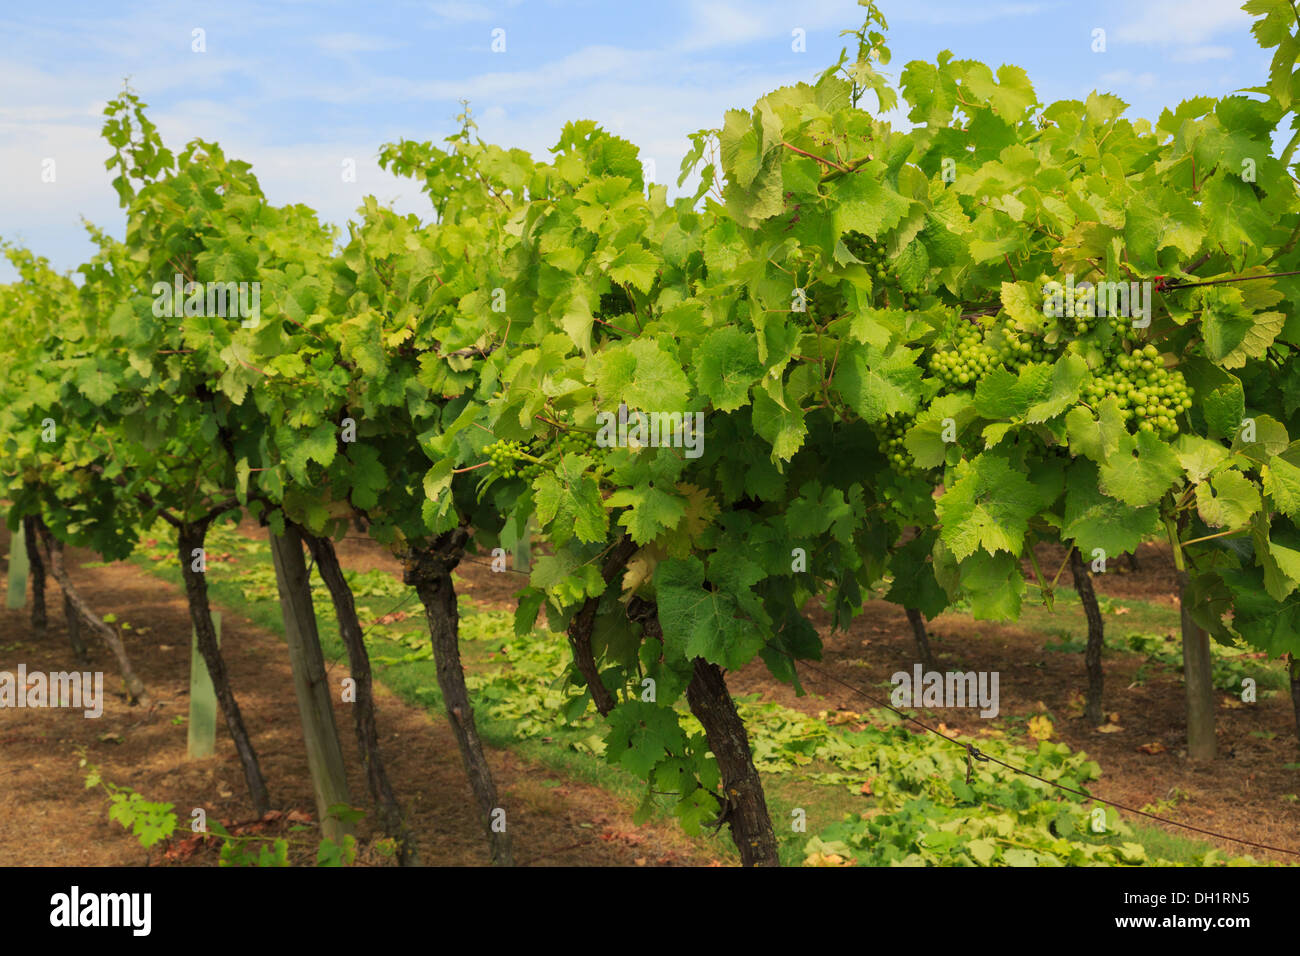 Rangées de vignes avec des grappes de raisins blancs maturation croissant sur un vignoble à la fin de l'été à Cranbrook Kent Angleterre Royaume-uni Grande-Bretagne Banque D'Images